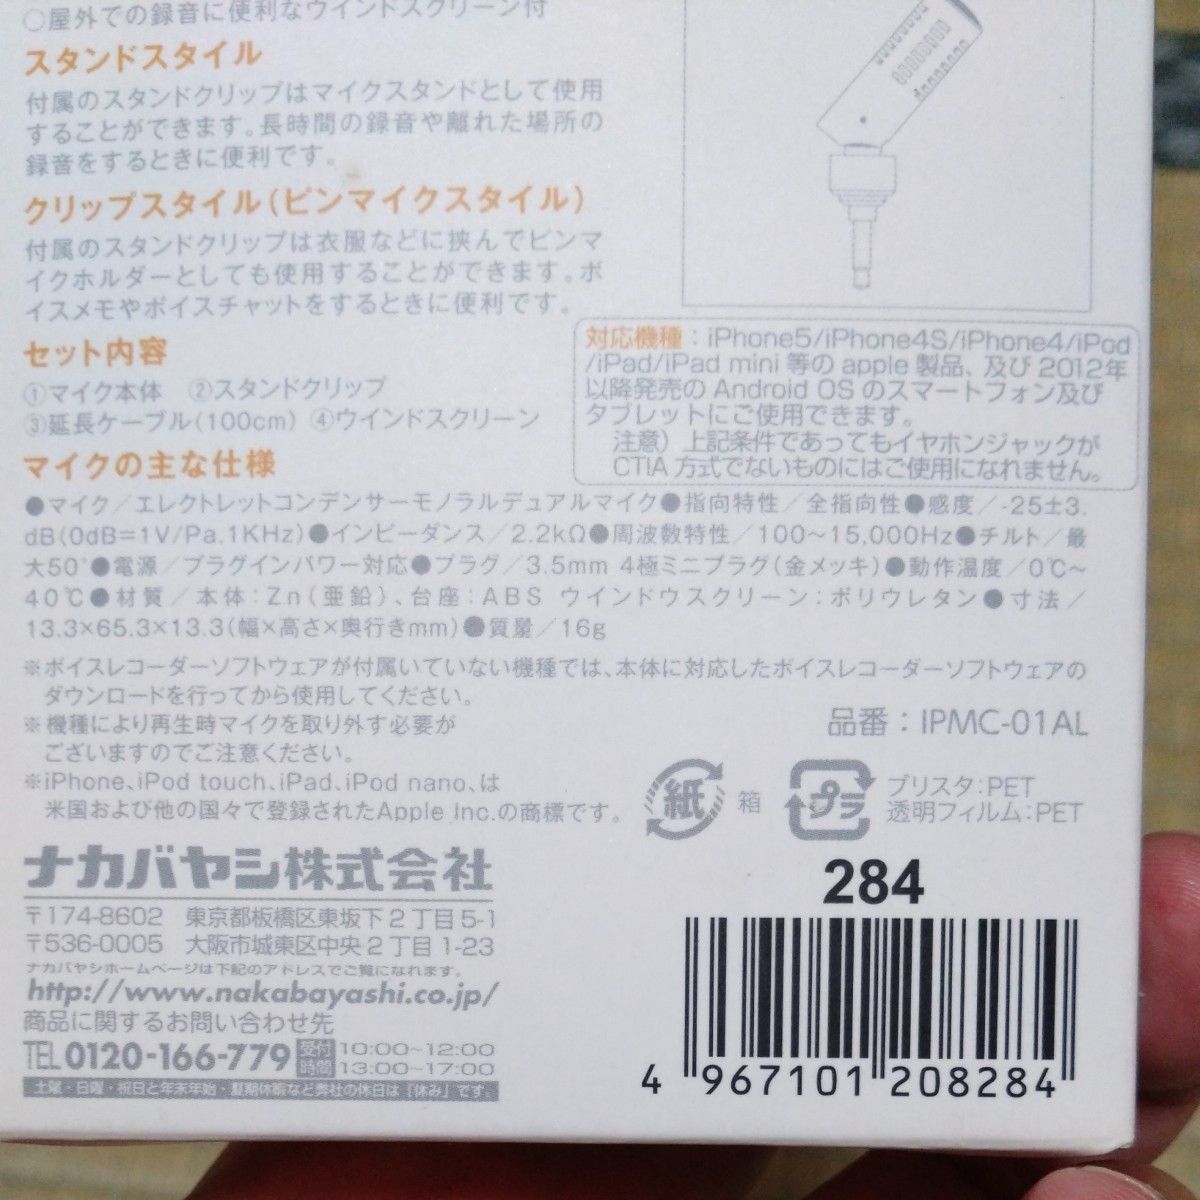 ナカバヤシ株式会社　IPMC-01AL microqhone for iPhone & smartqhone ピンマイク